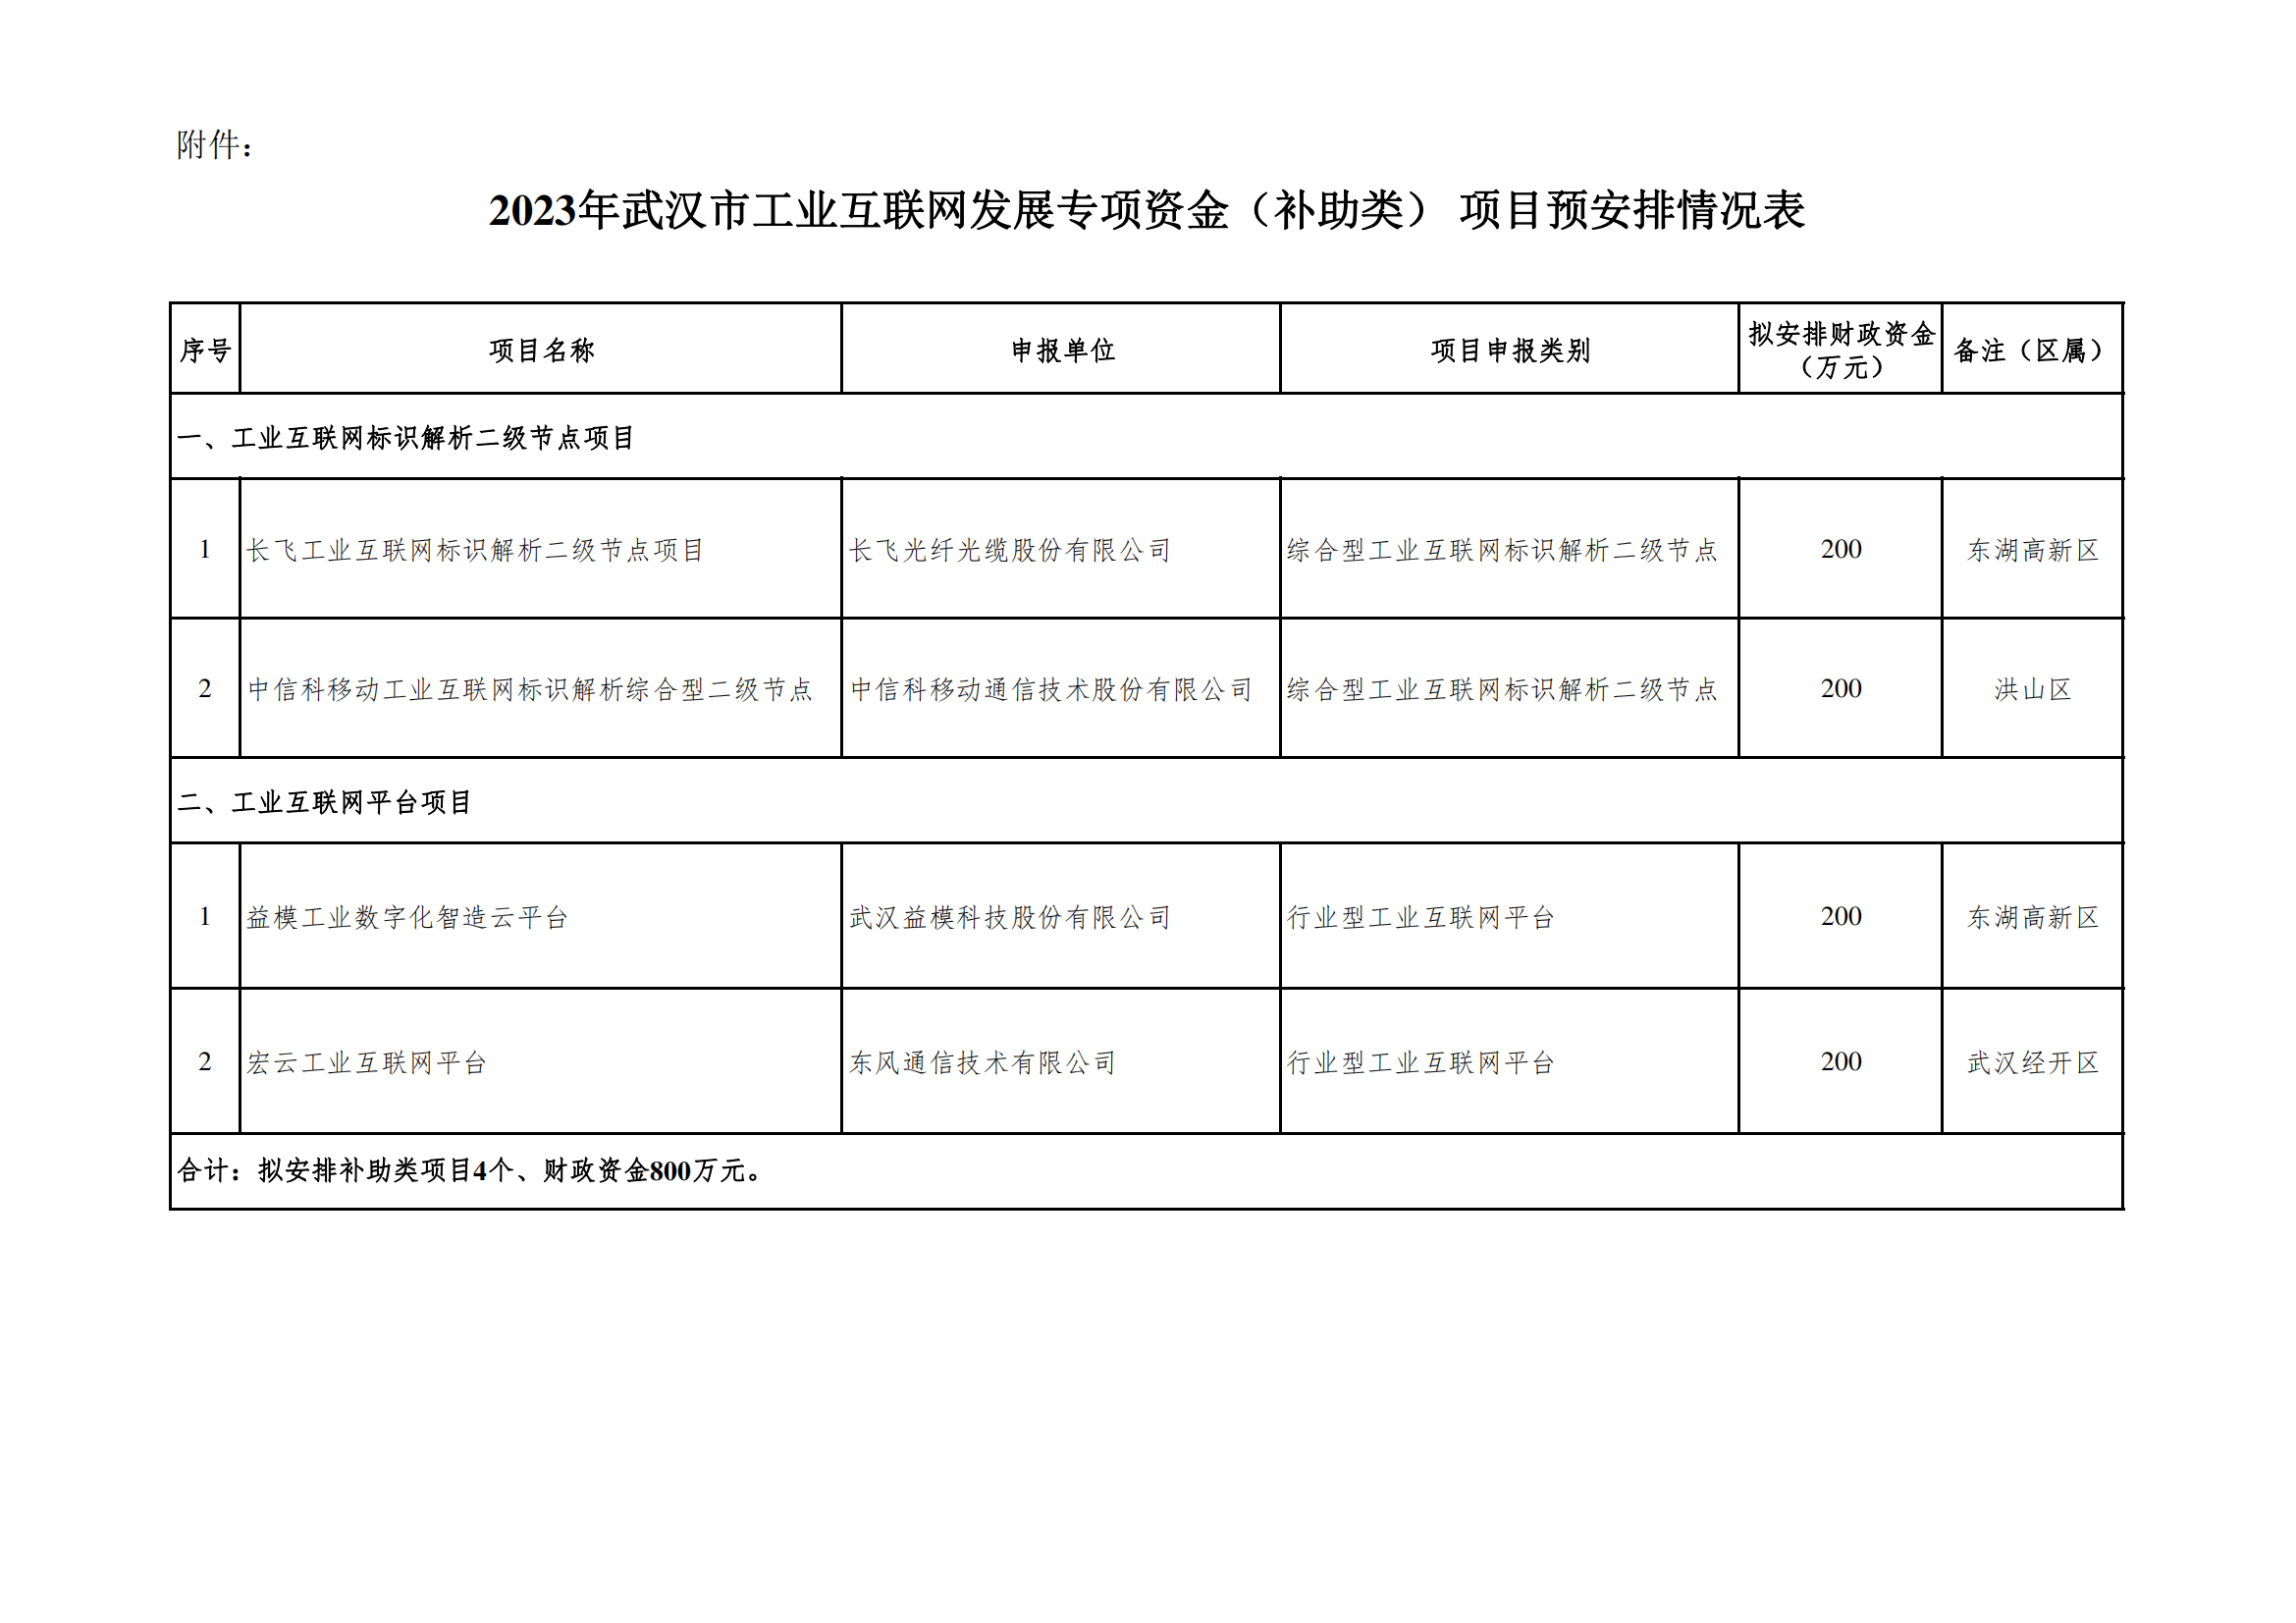 2023年武汉市工业互联网发展专项资金（补助类）项目预安排情况表_00.png